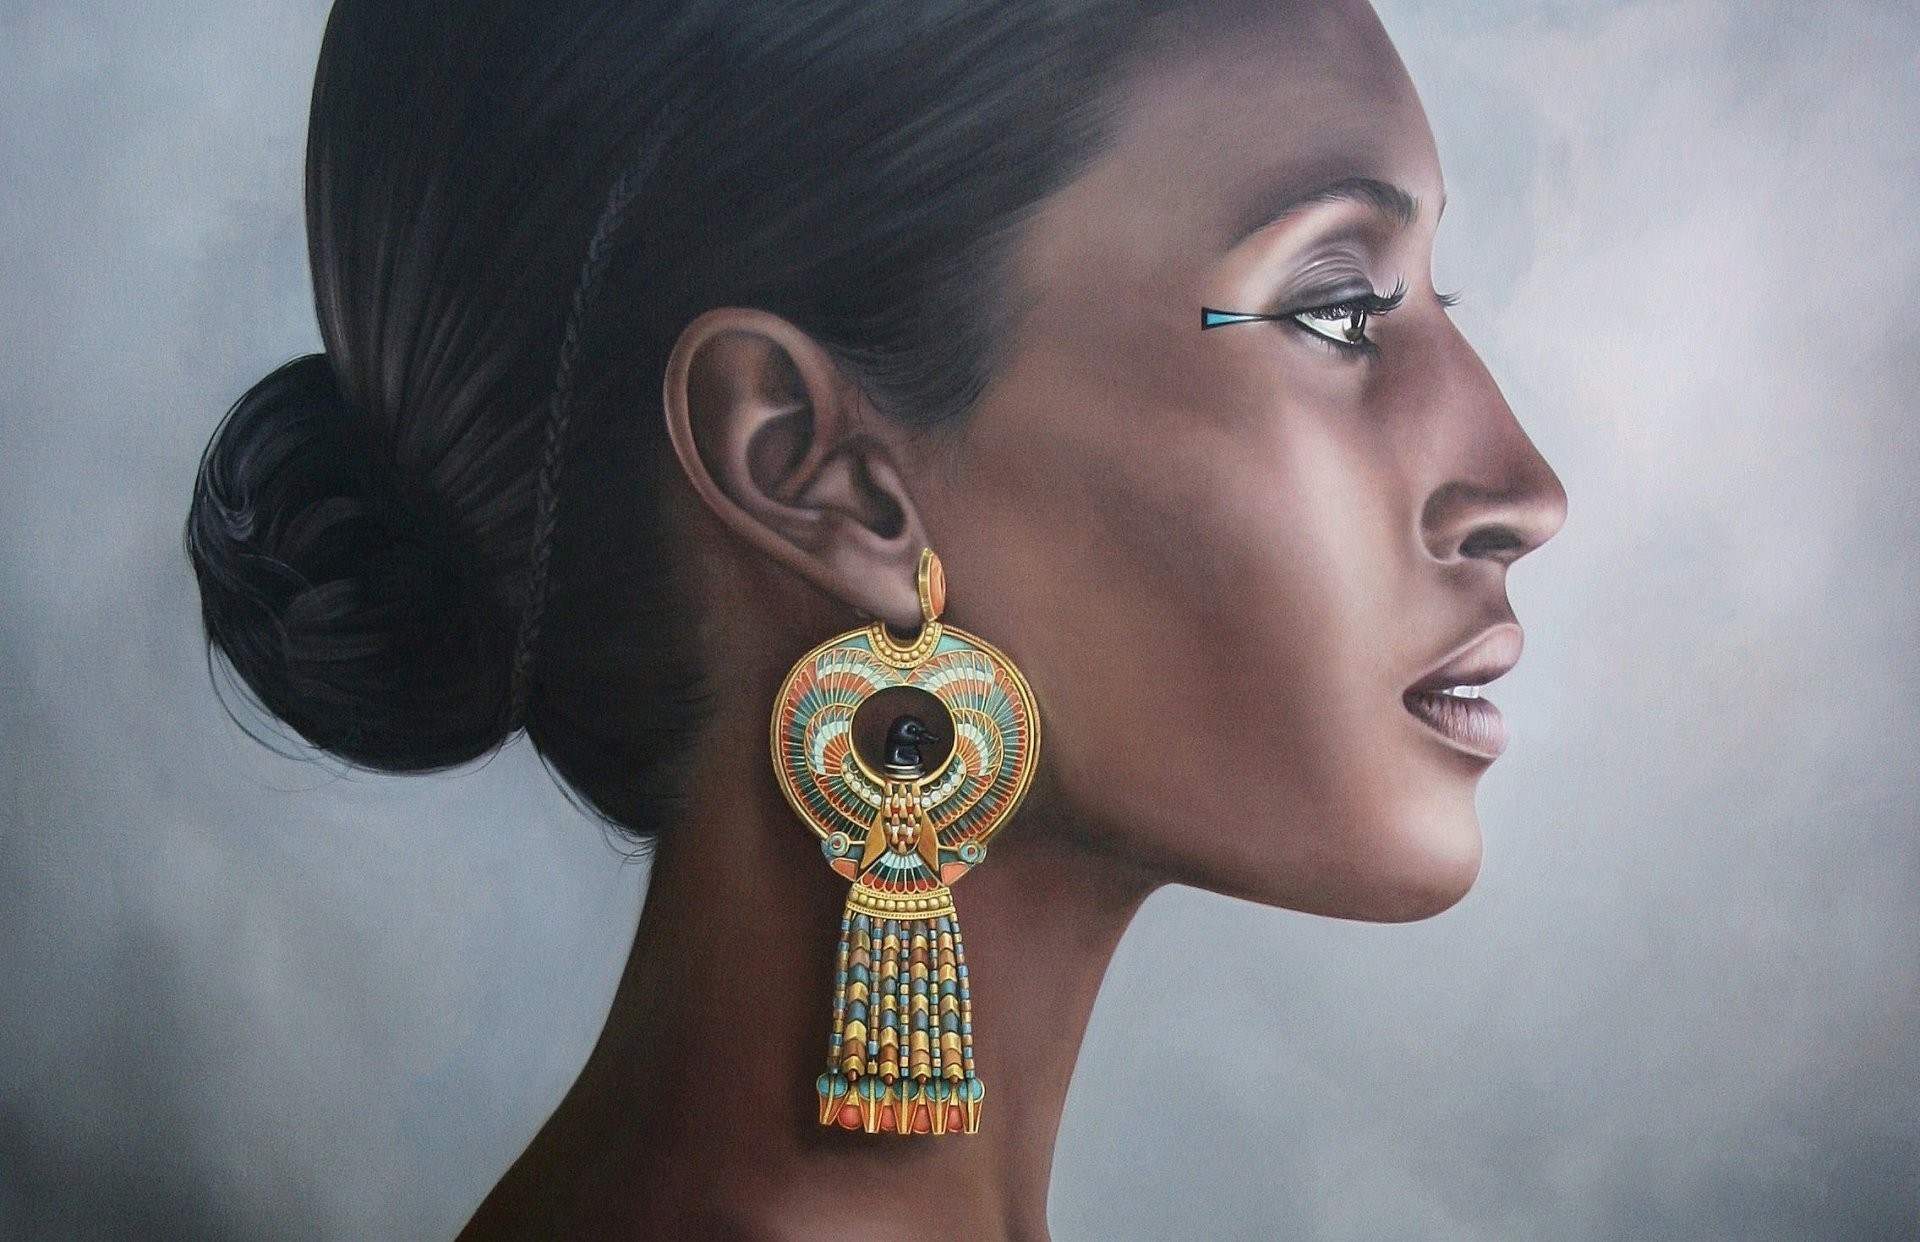 Hatshepsut hatshepsut a woman earrings egypt portrait pharaoh